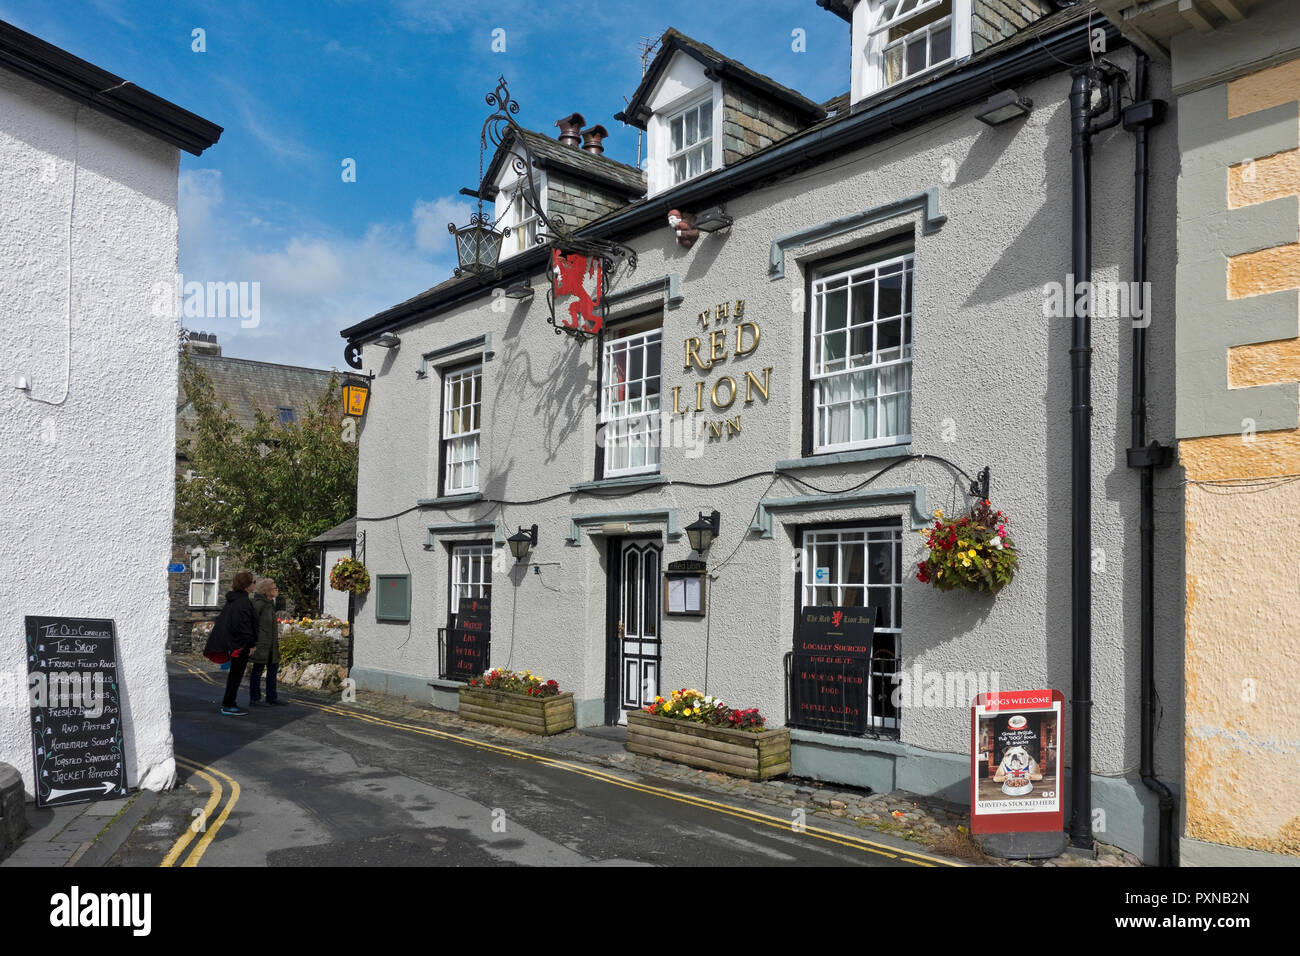 The Red Lion Inn Village Pub Public House im Spätsommer Hawkshead Cumbria England Vereinigtes Königreich GB Großbritannien Stockfoto